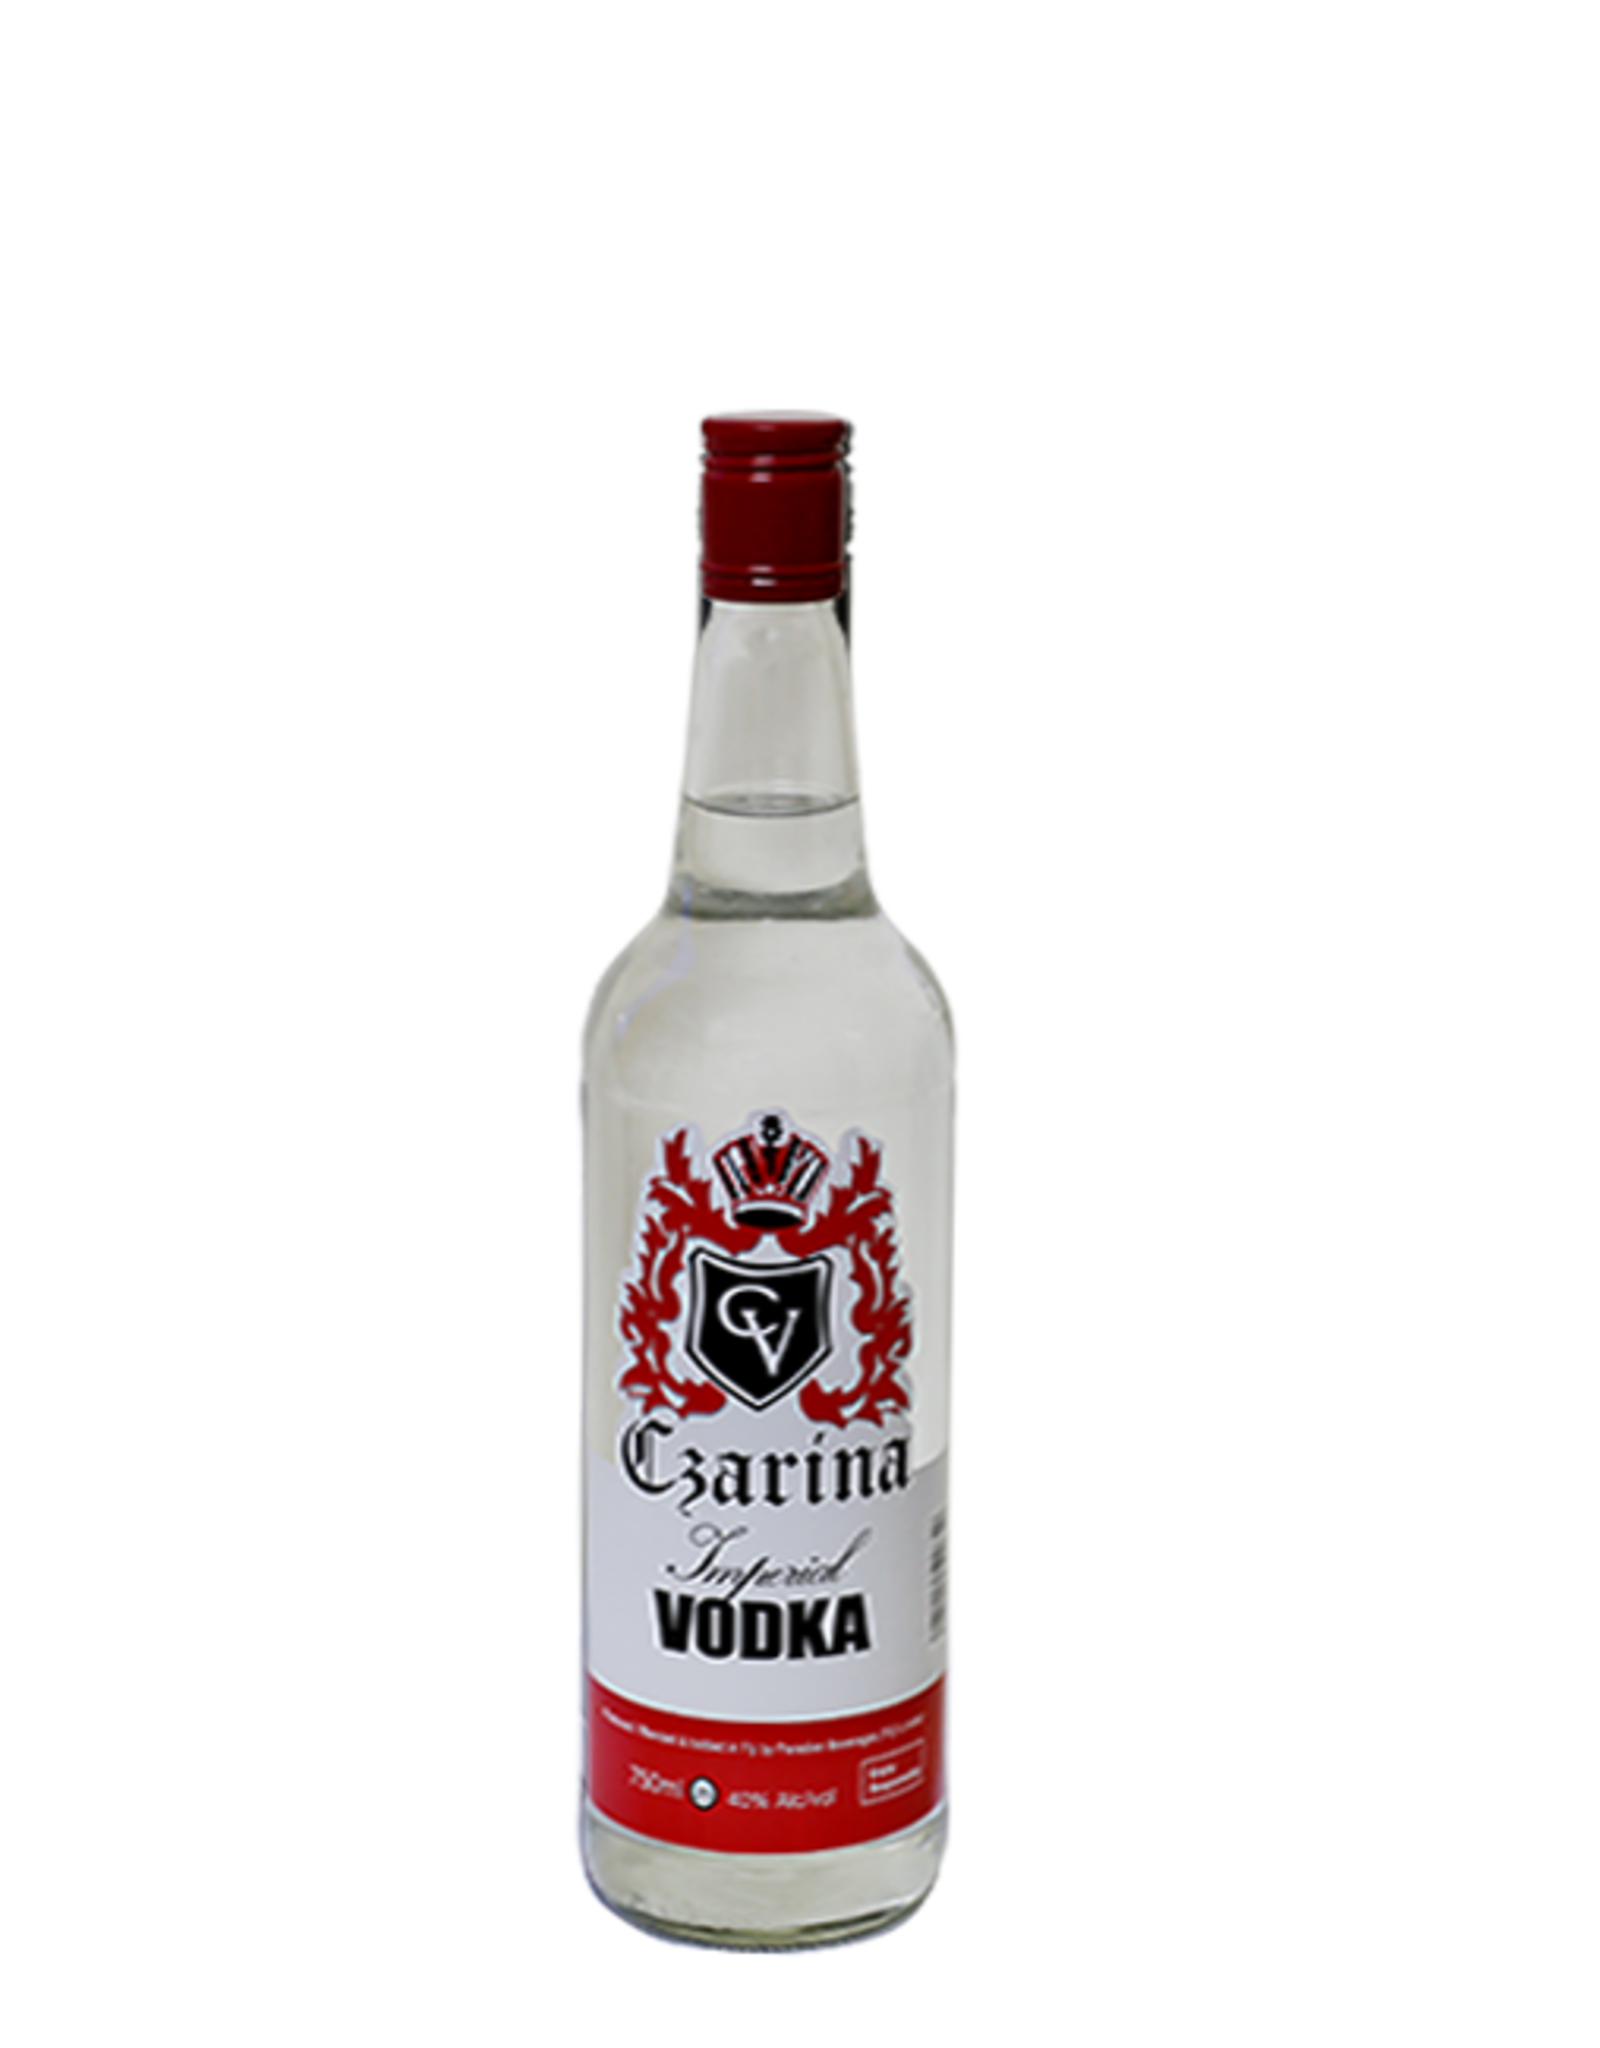 Czarina Czarina Vodka 750 mL